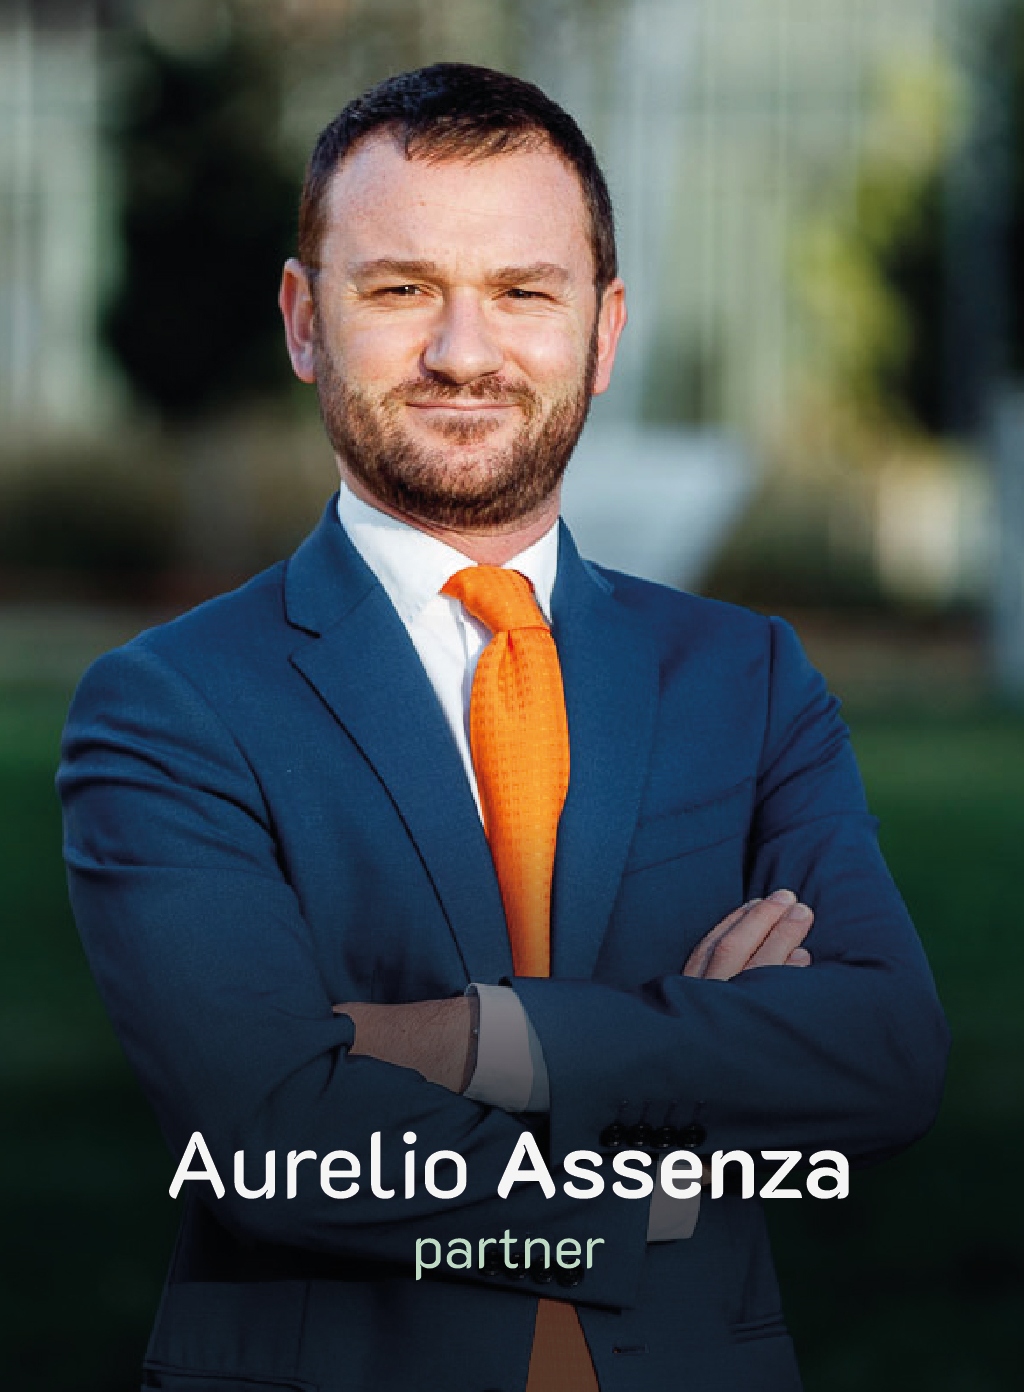 Aurelio Assenza